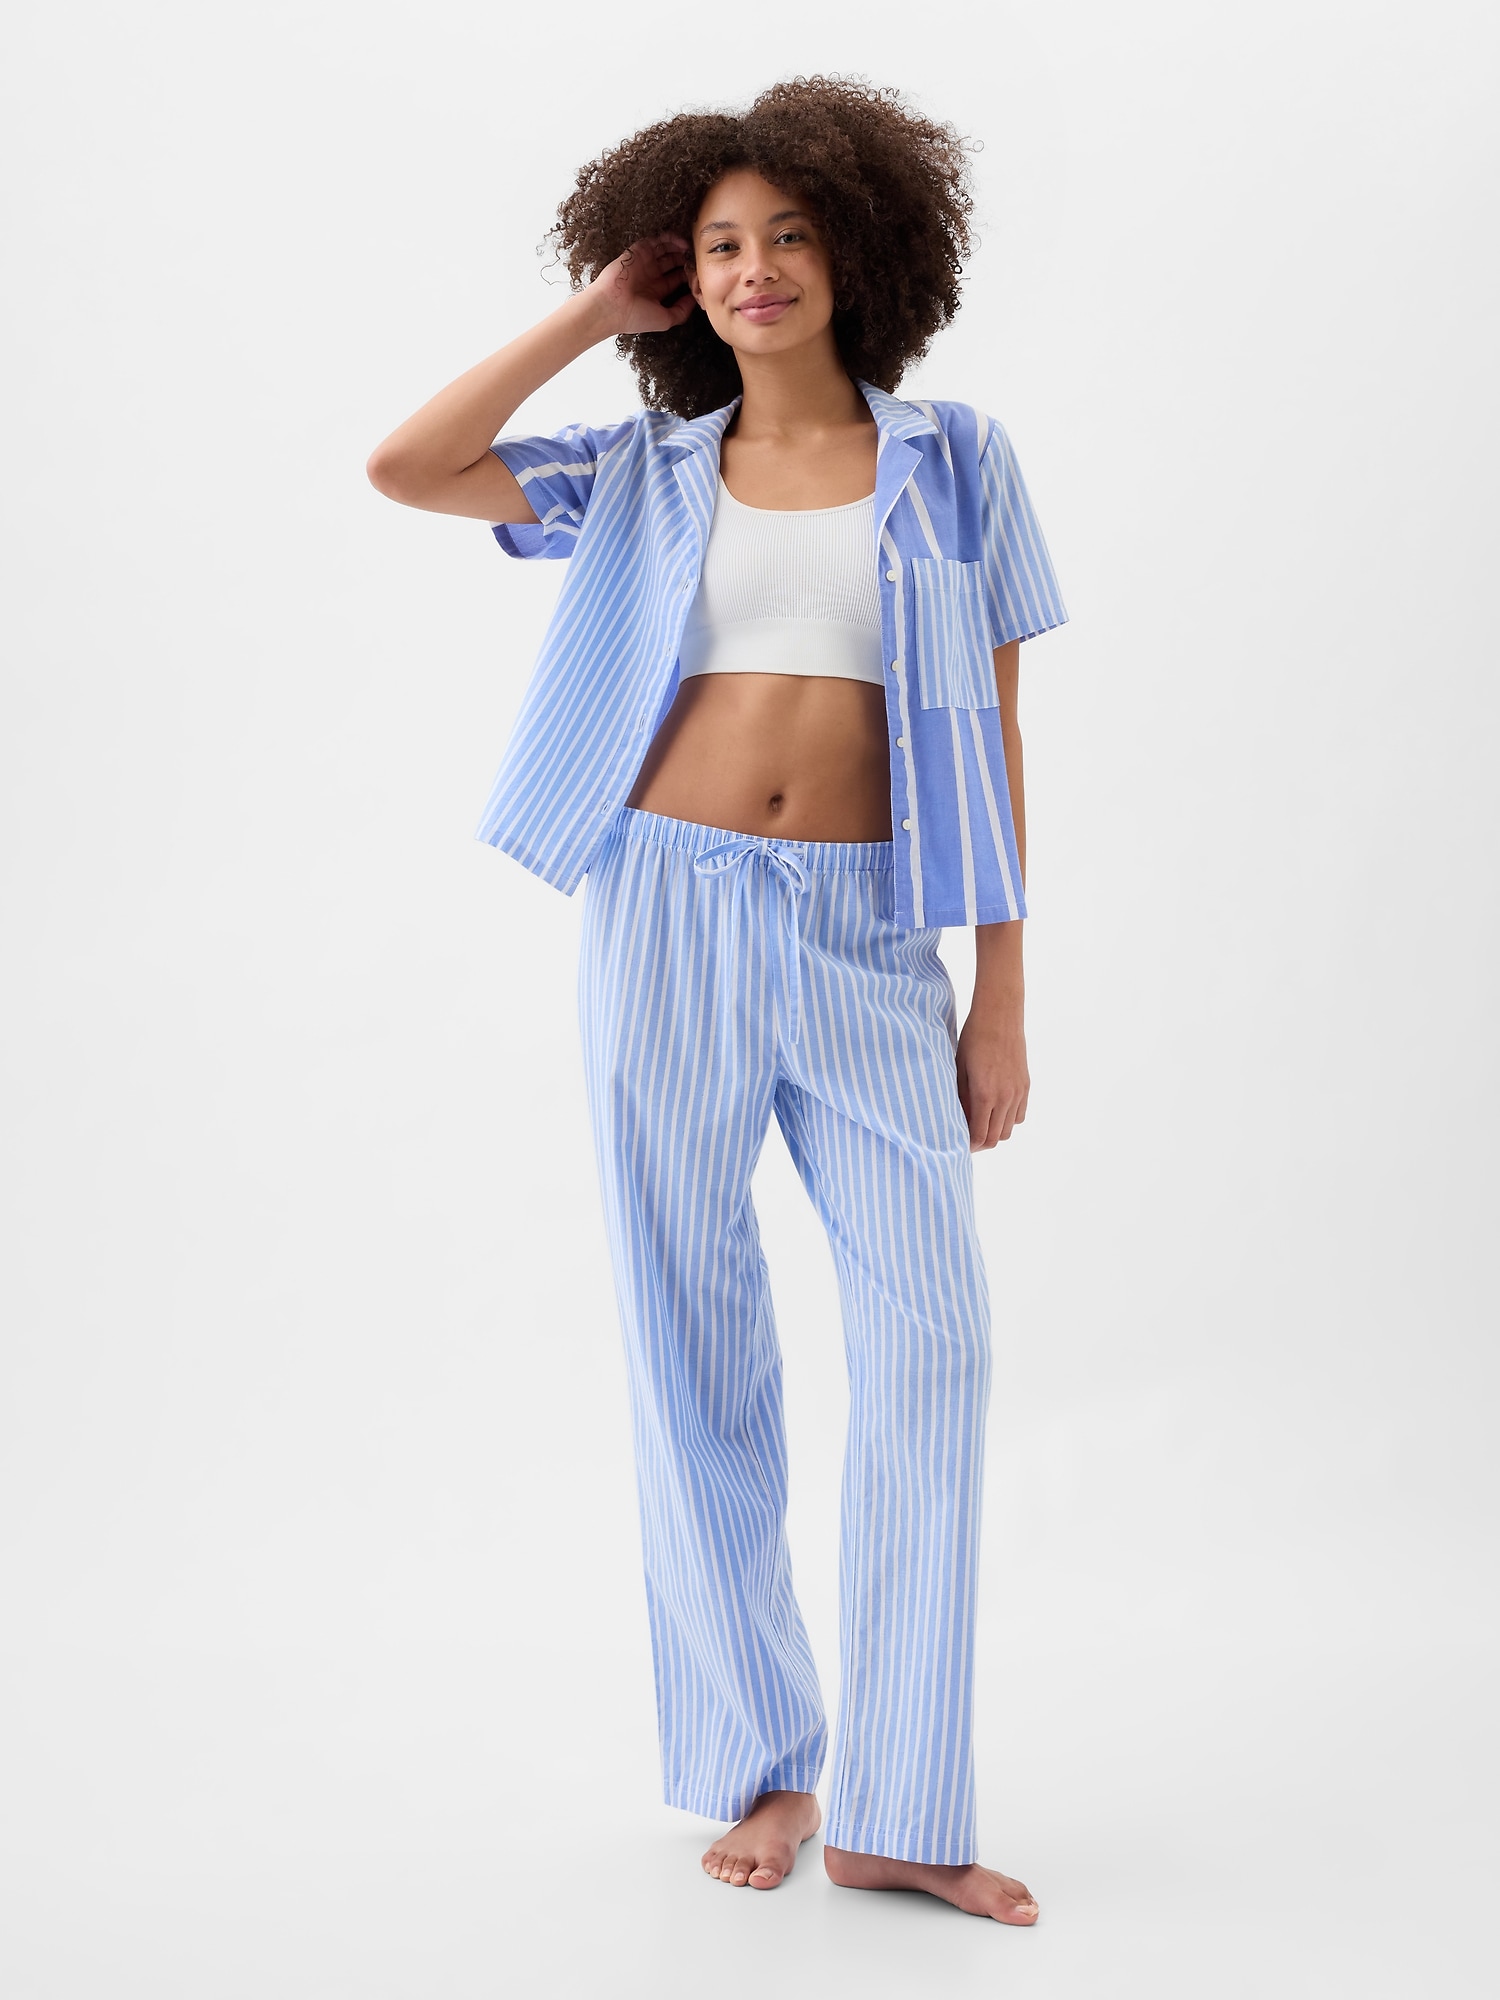 Poplin pajama pants Lola - XS-S / US size 4-6 / UK 6-8 - pattern A4 + letter